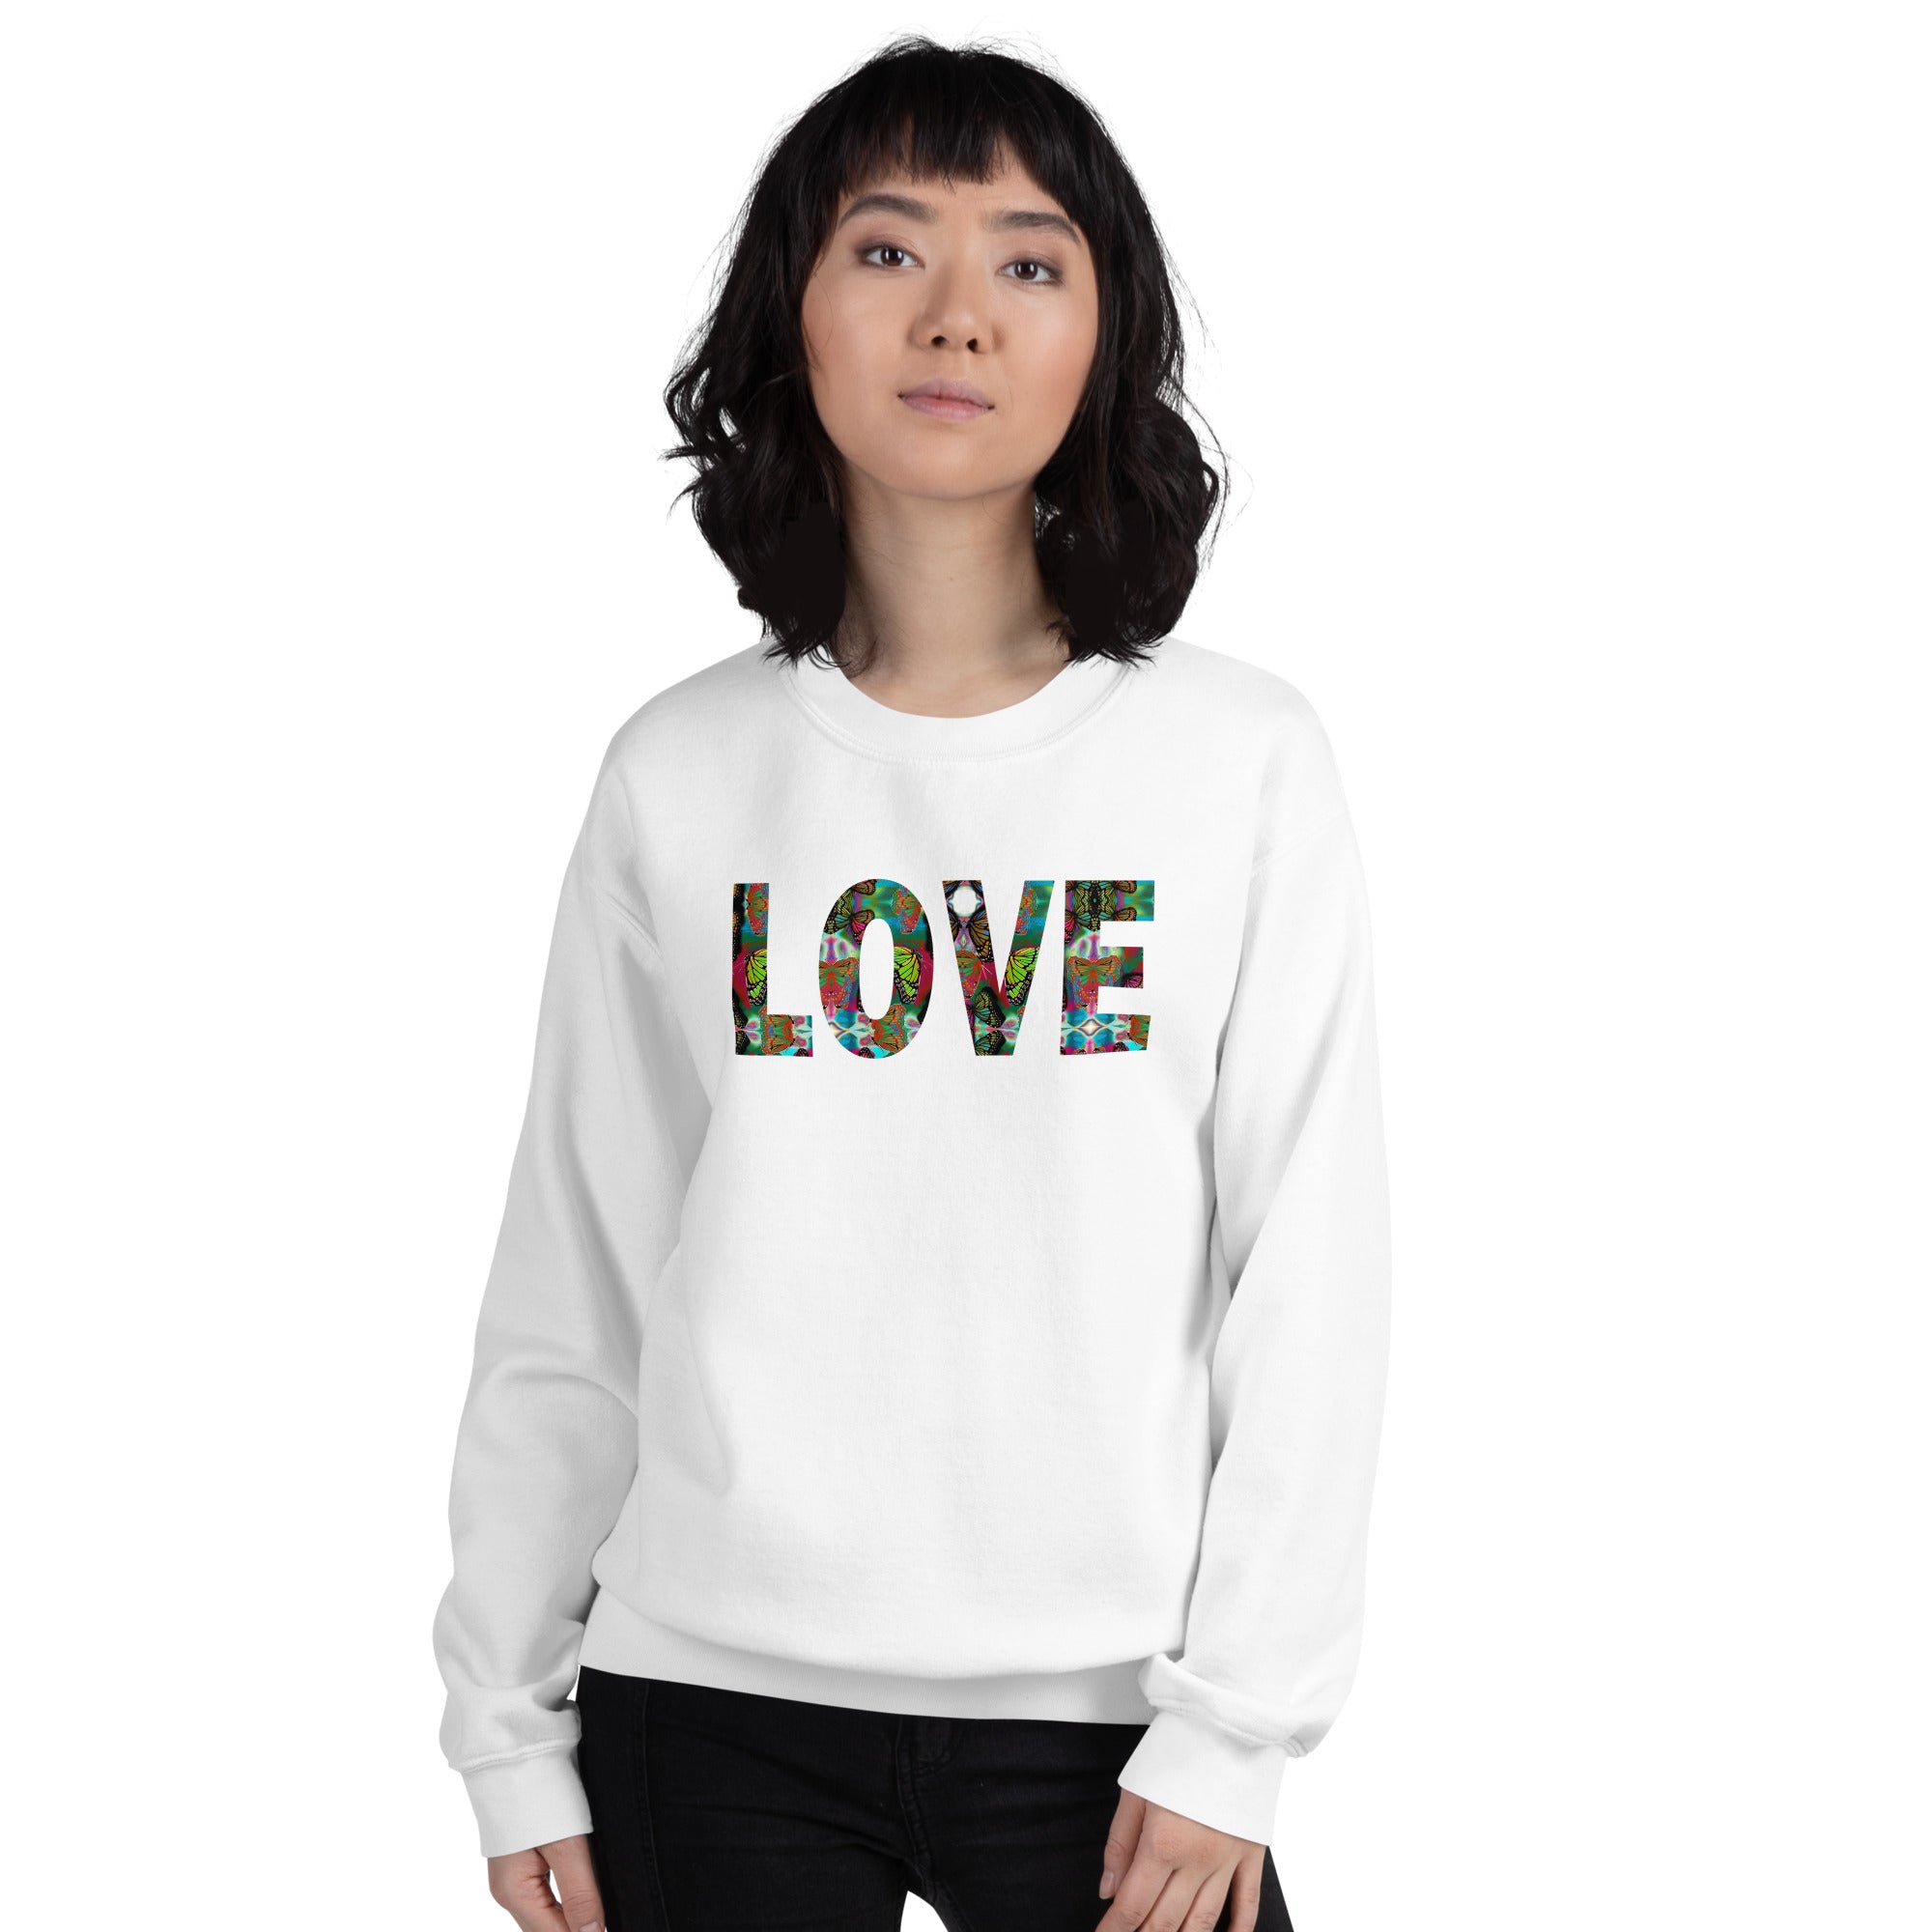 LOVE ~ Butterfly Word Art Crew Neck Graphic Sweatshirt, Women's Unisex Fleece Top